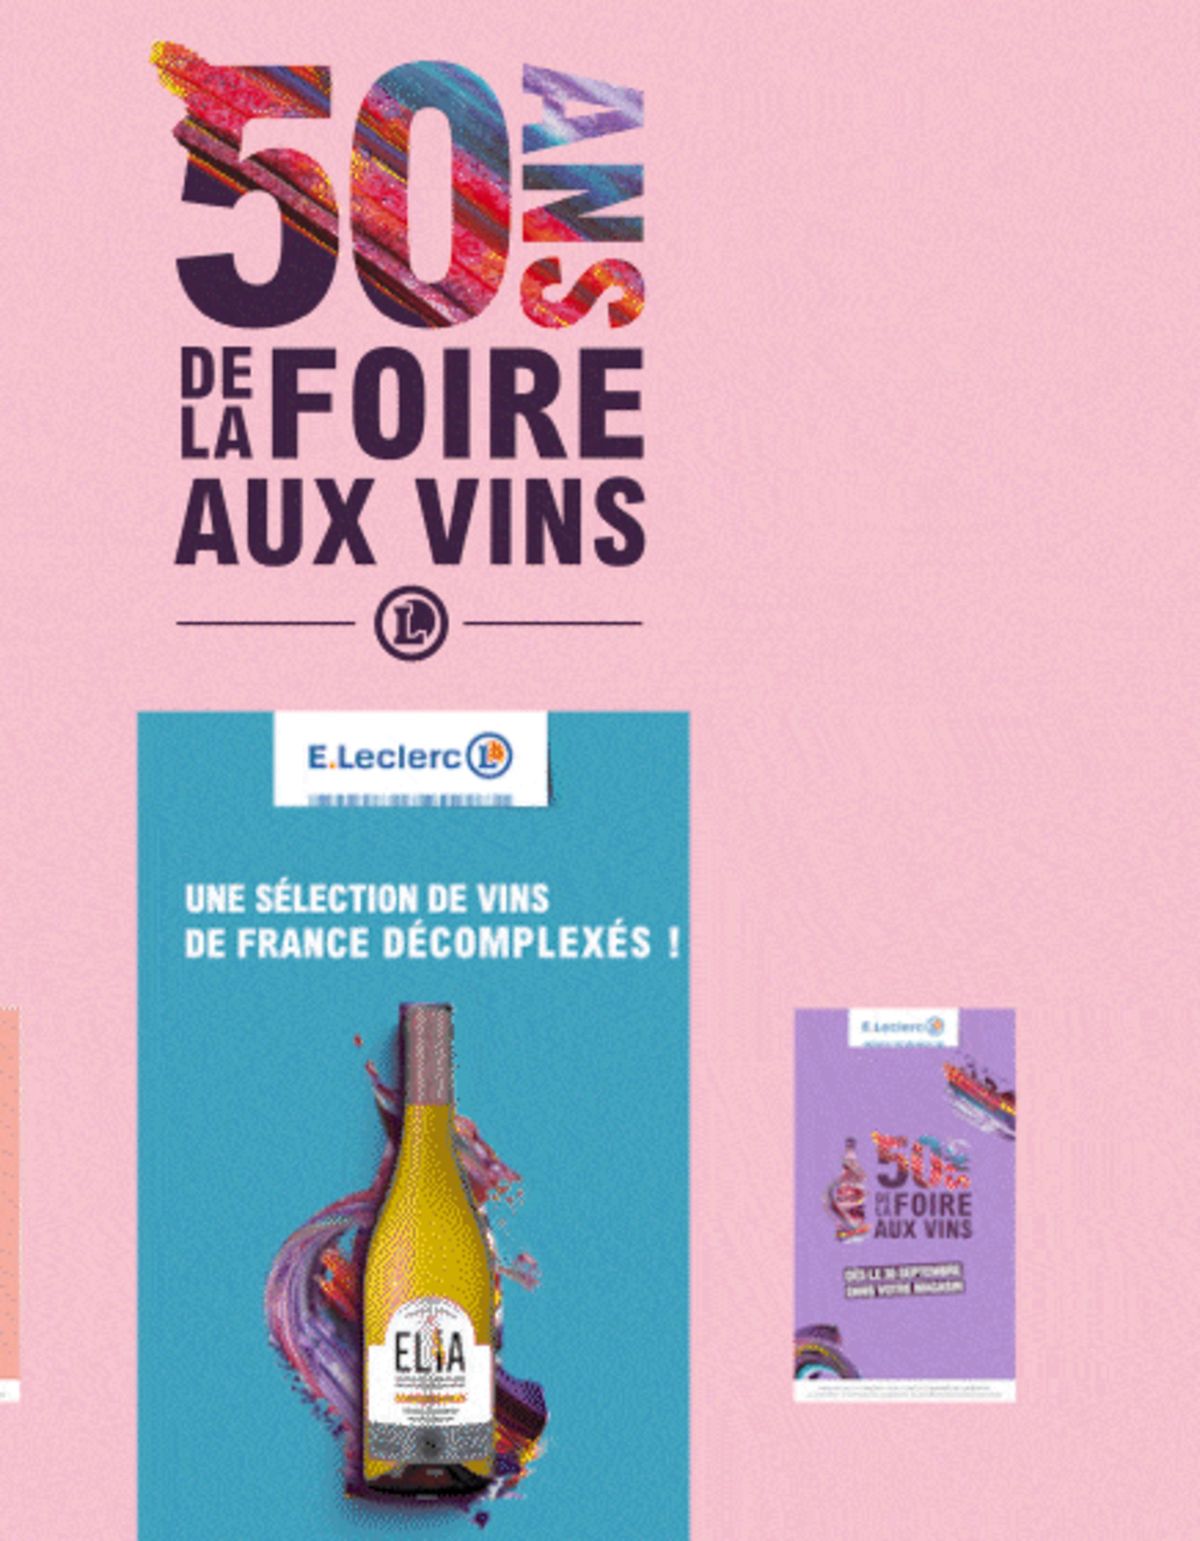 Catalogue Foire Aux Vins - Mixte, page 01261